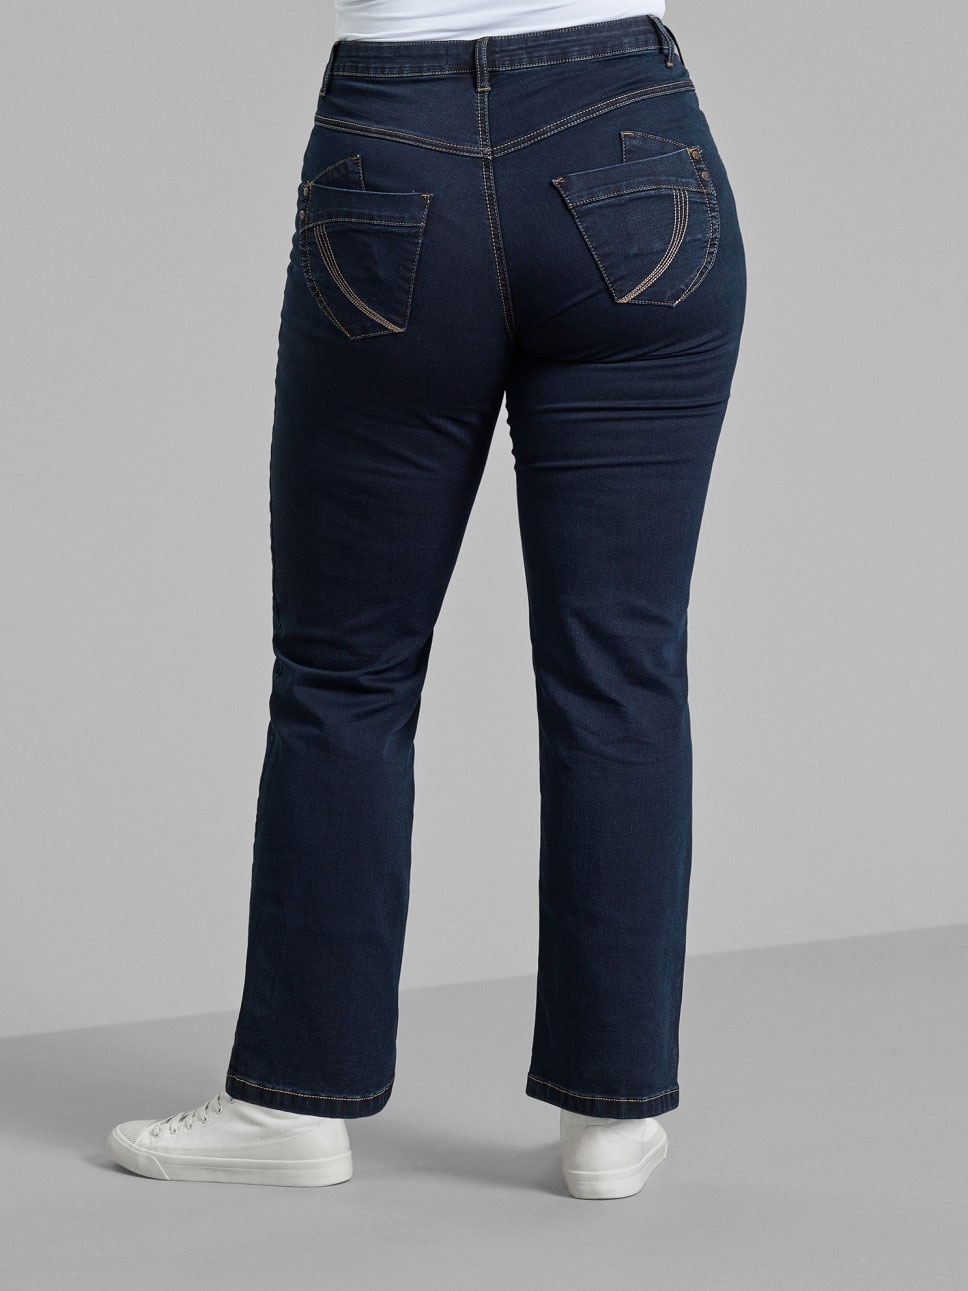 Gemma bukser i blå denim med 82 cm benlængde fra Zizzi